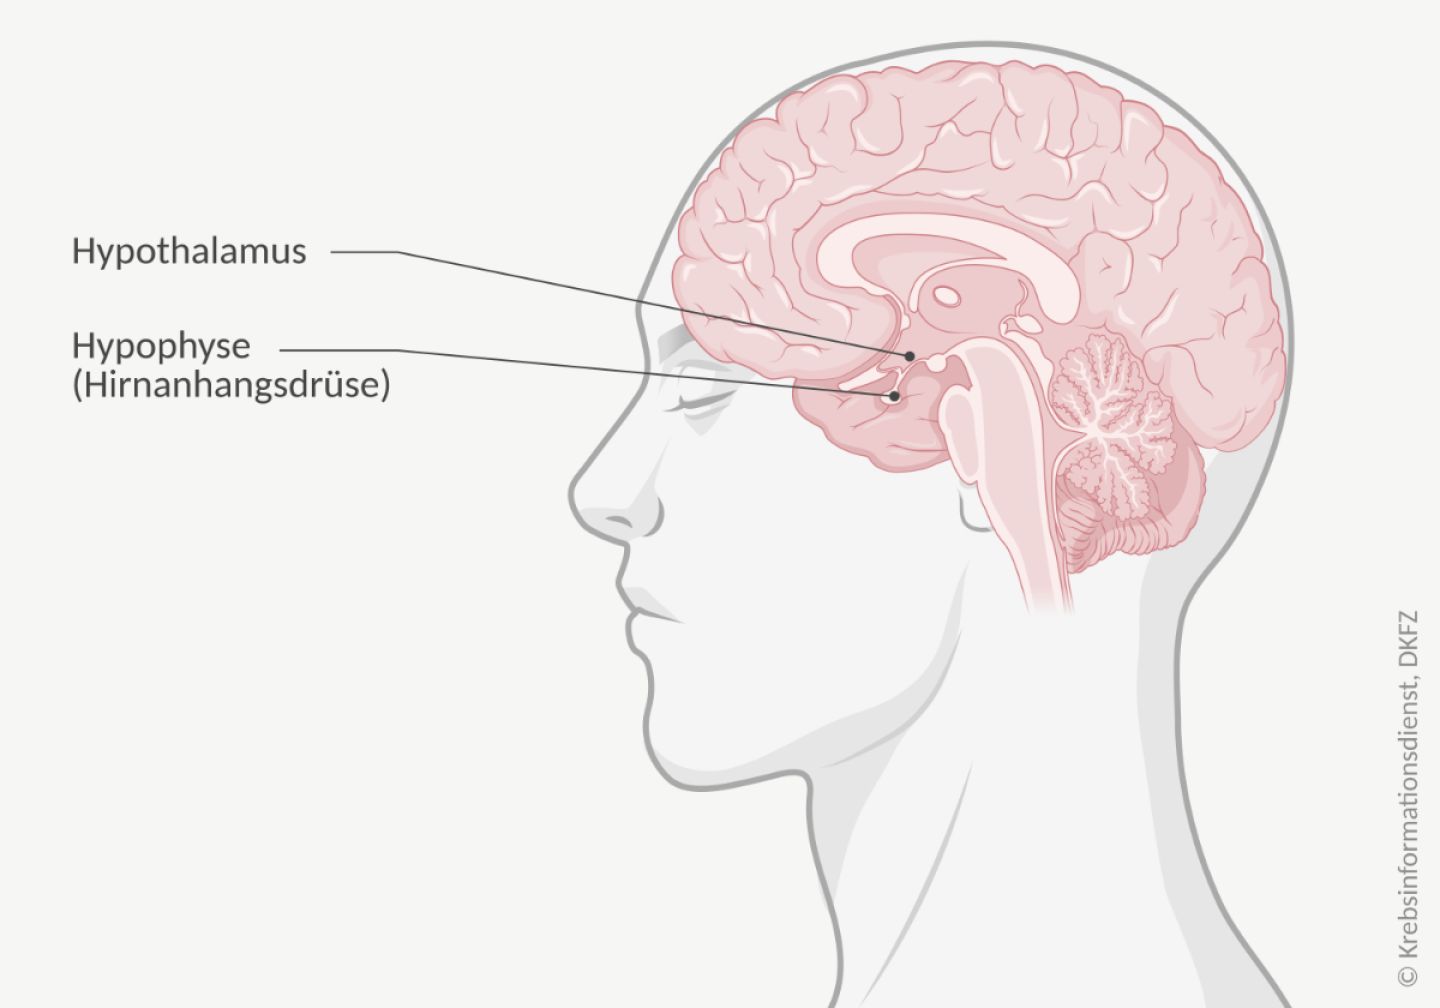 Anatomische Darstellung des menschlichen Gehirns und der Lage des Hypothalamus und der Hypophyse (Hirnanhangsdrüse).